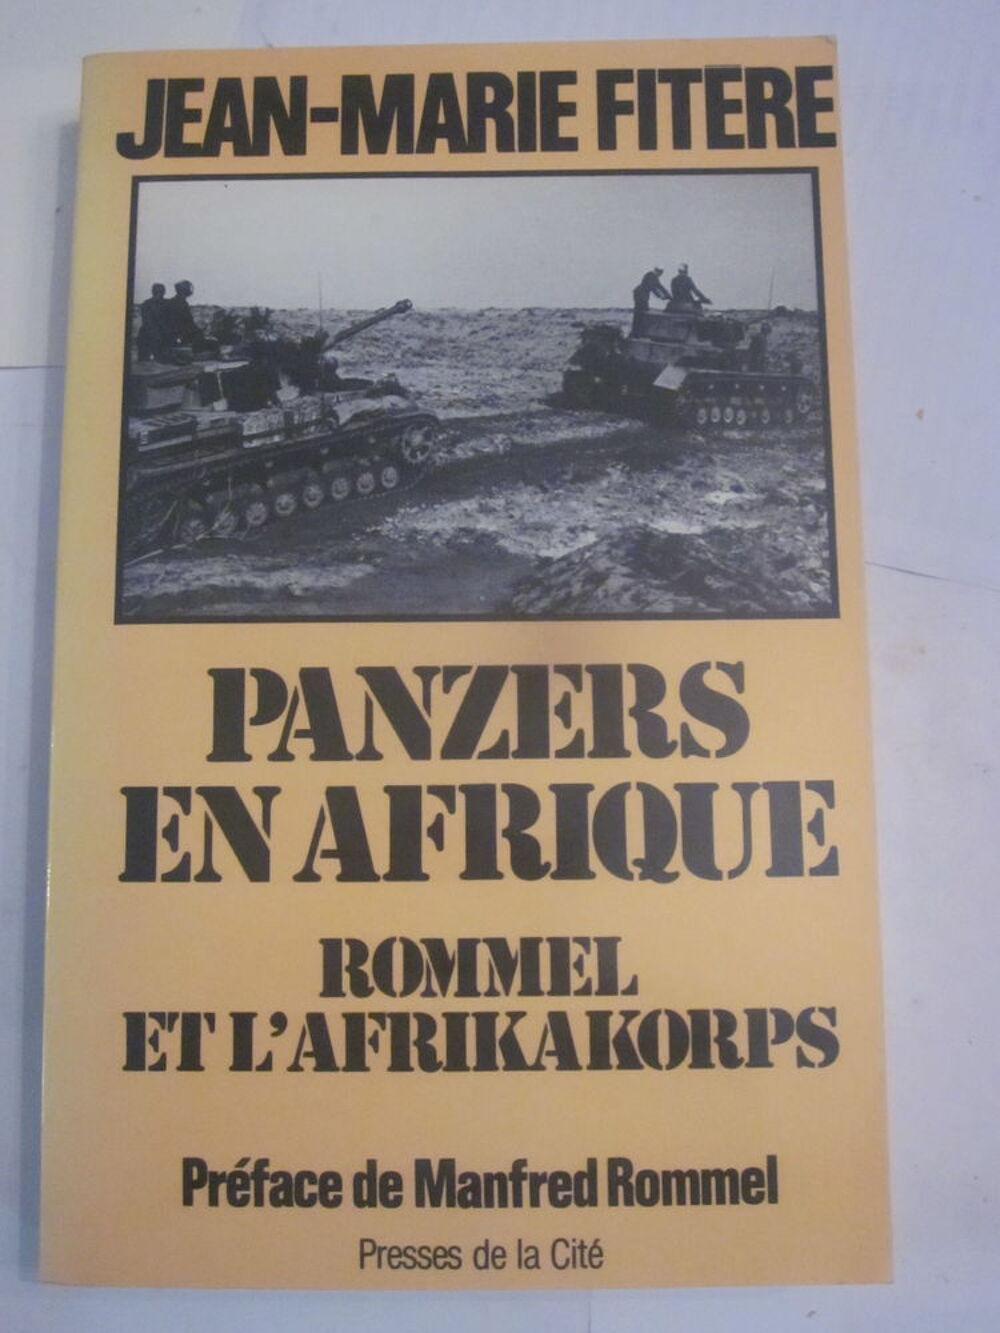 PANZERS EN AFRIQUE par J. MICHEL FITERE Livres et BD